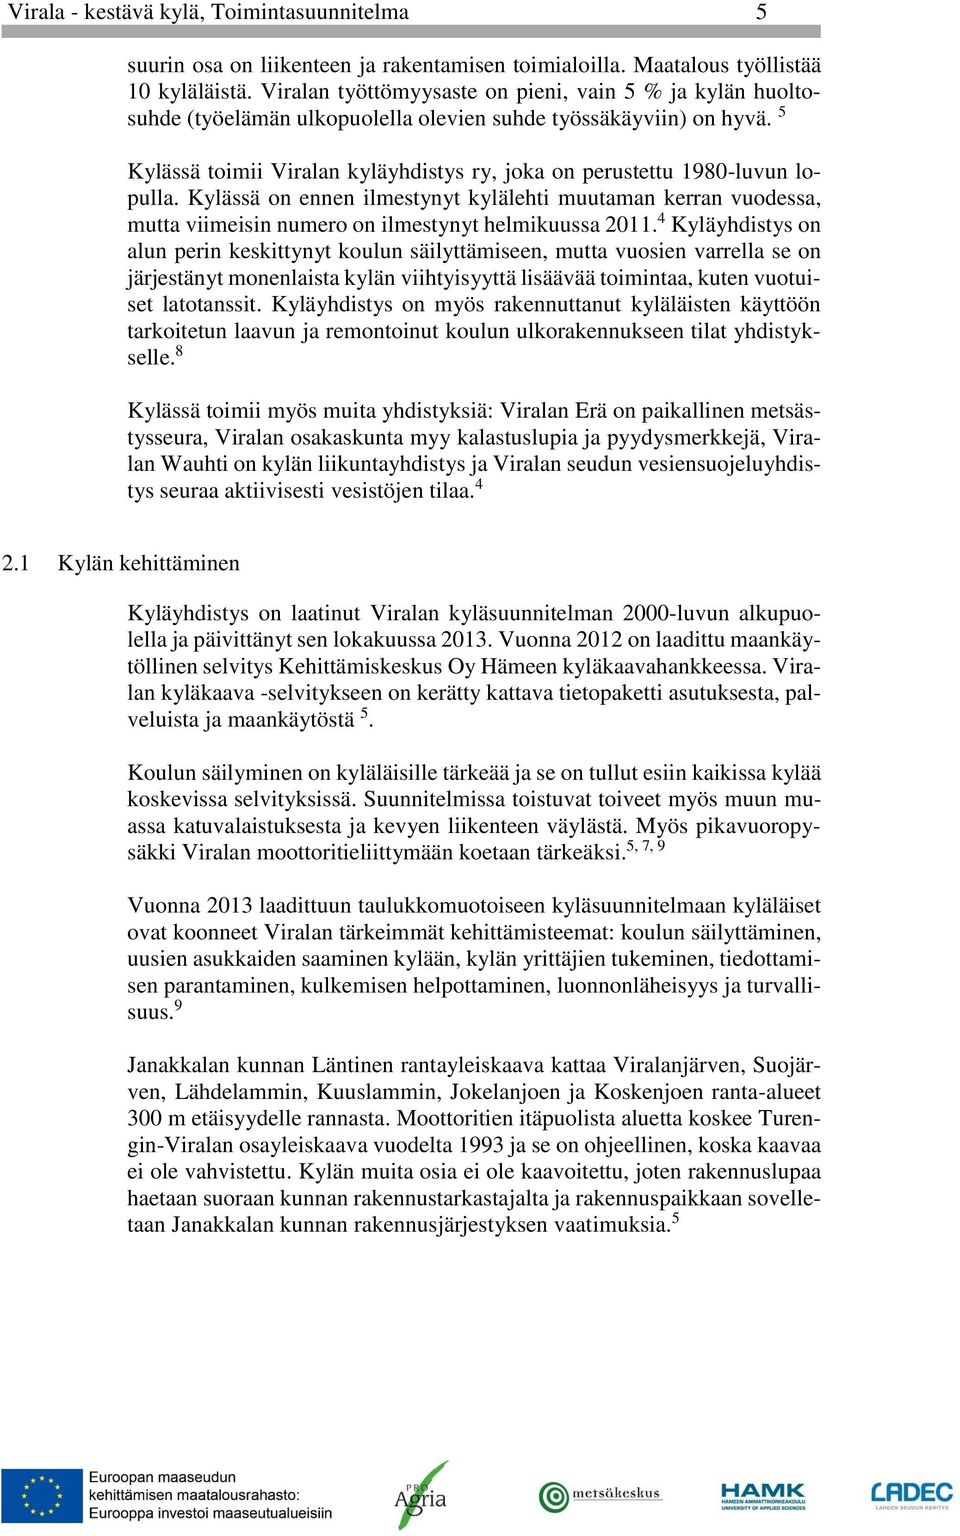 5 Kylässä toimii Viralan kyläyhdistys ry, joka on perustettu 1980-luvun lopulla. Kylässä on ennen ilmestynyt kylälehti muutaman kerran vuodessa, mutta viimeisin numero on ilmestynyt helmikuussa 2011.